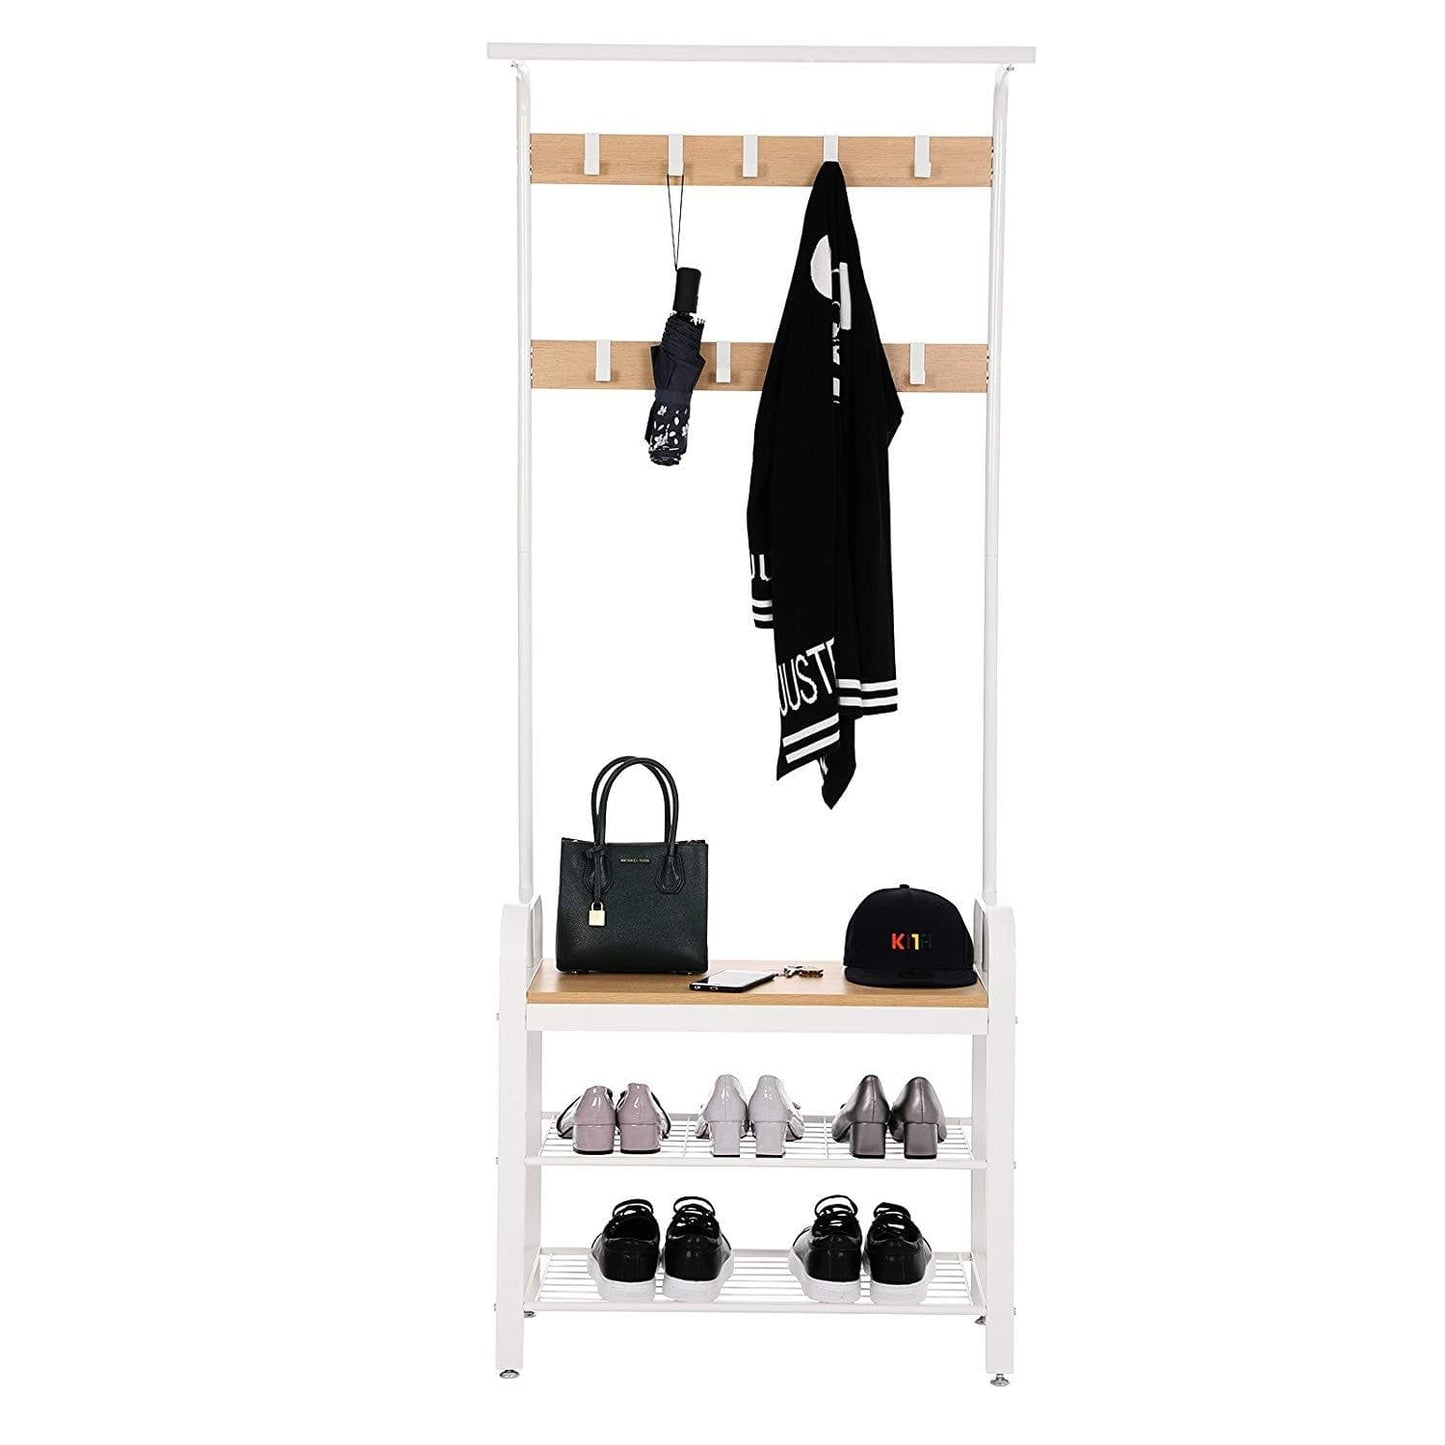 Nancy's Standing Wardrobe Rack with Coat Rack - Shoe Rack and Bench - Vintage Industrial - Coat Racks - Beige / White - 72 x 33.7 x 183 cm